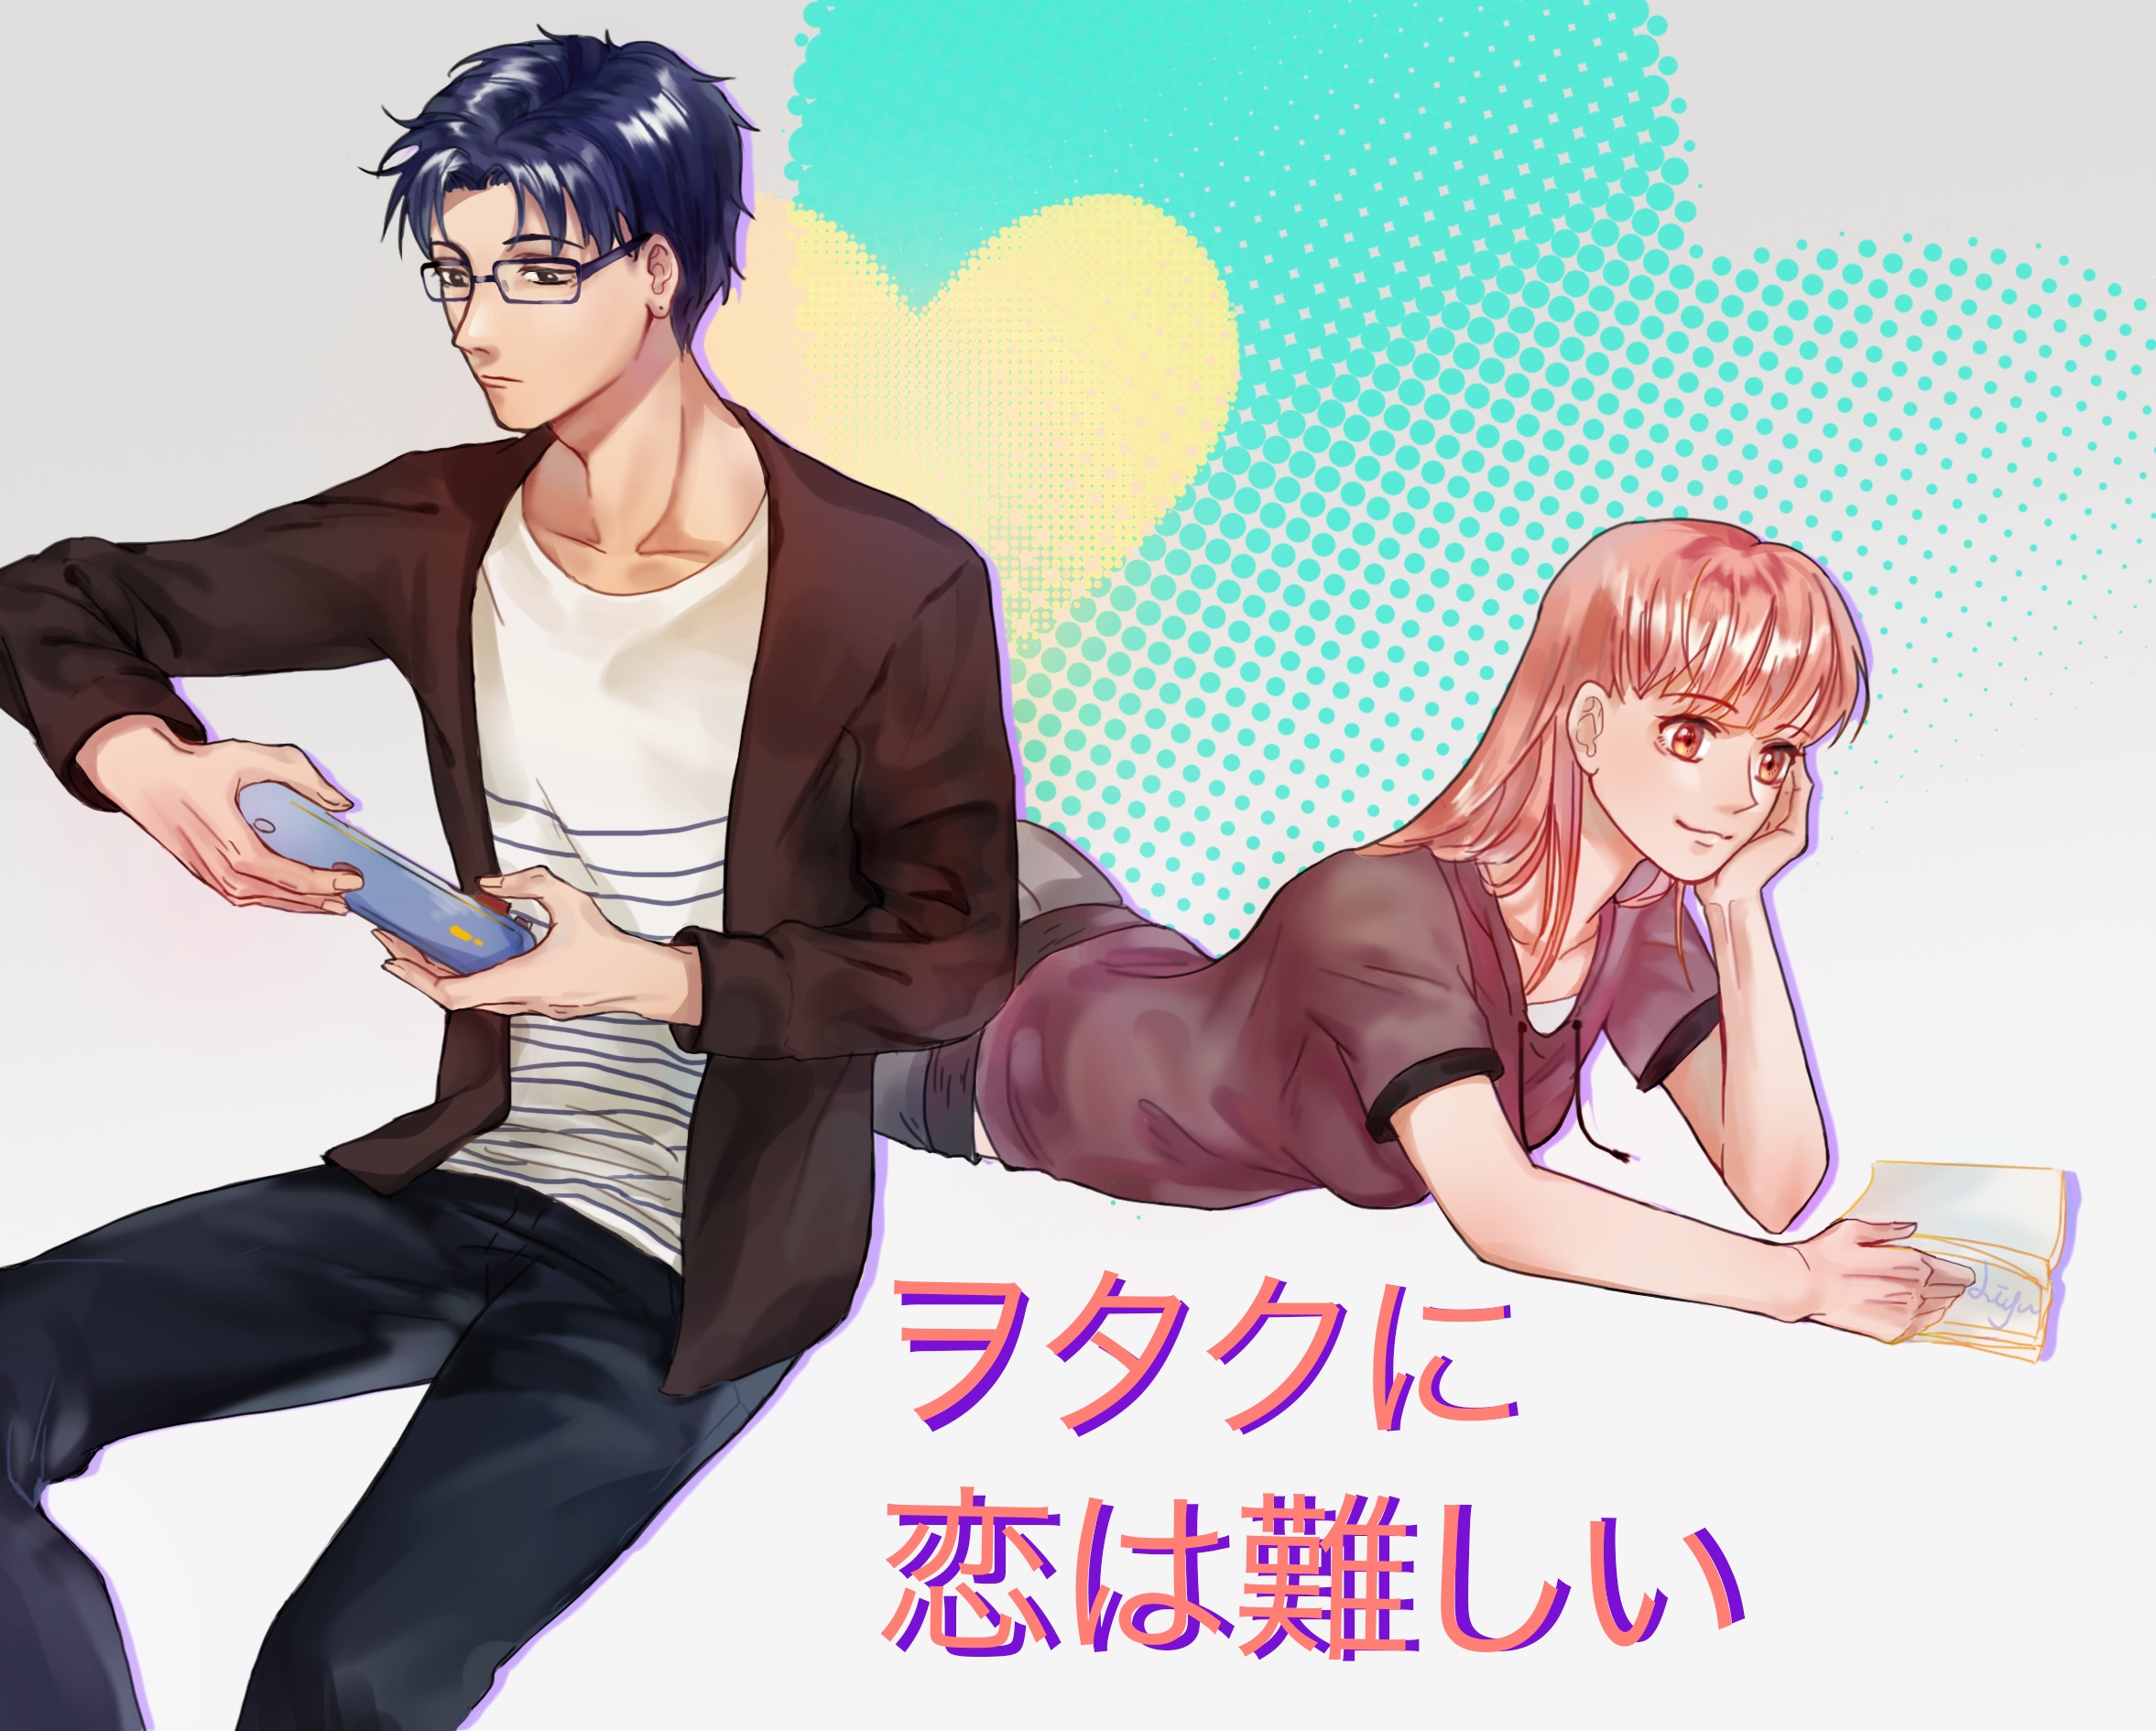 Anime, Wotaku ni Koi wa Muzukashii, Narumi Momose, HD wallpaper